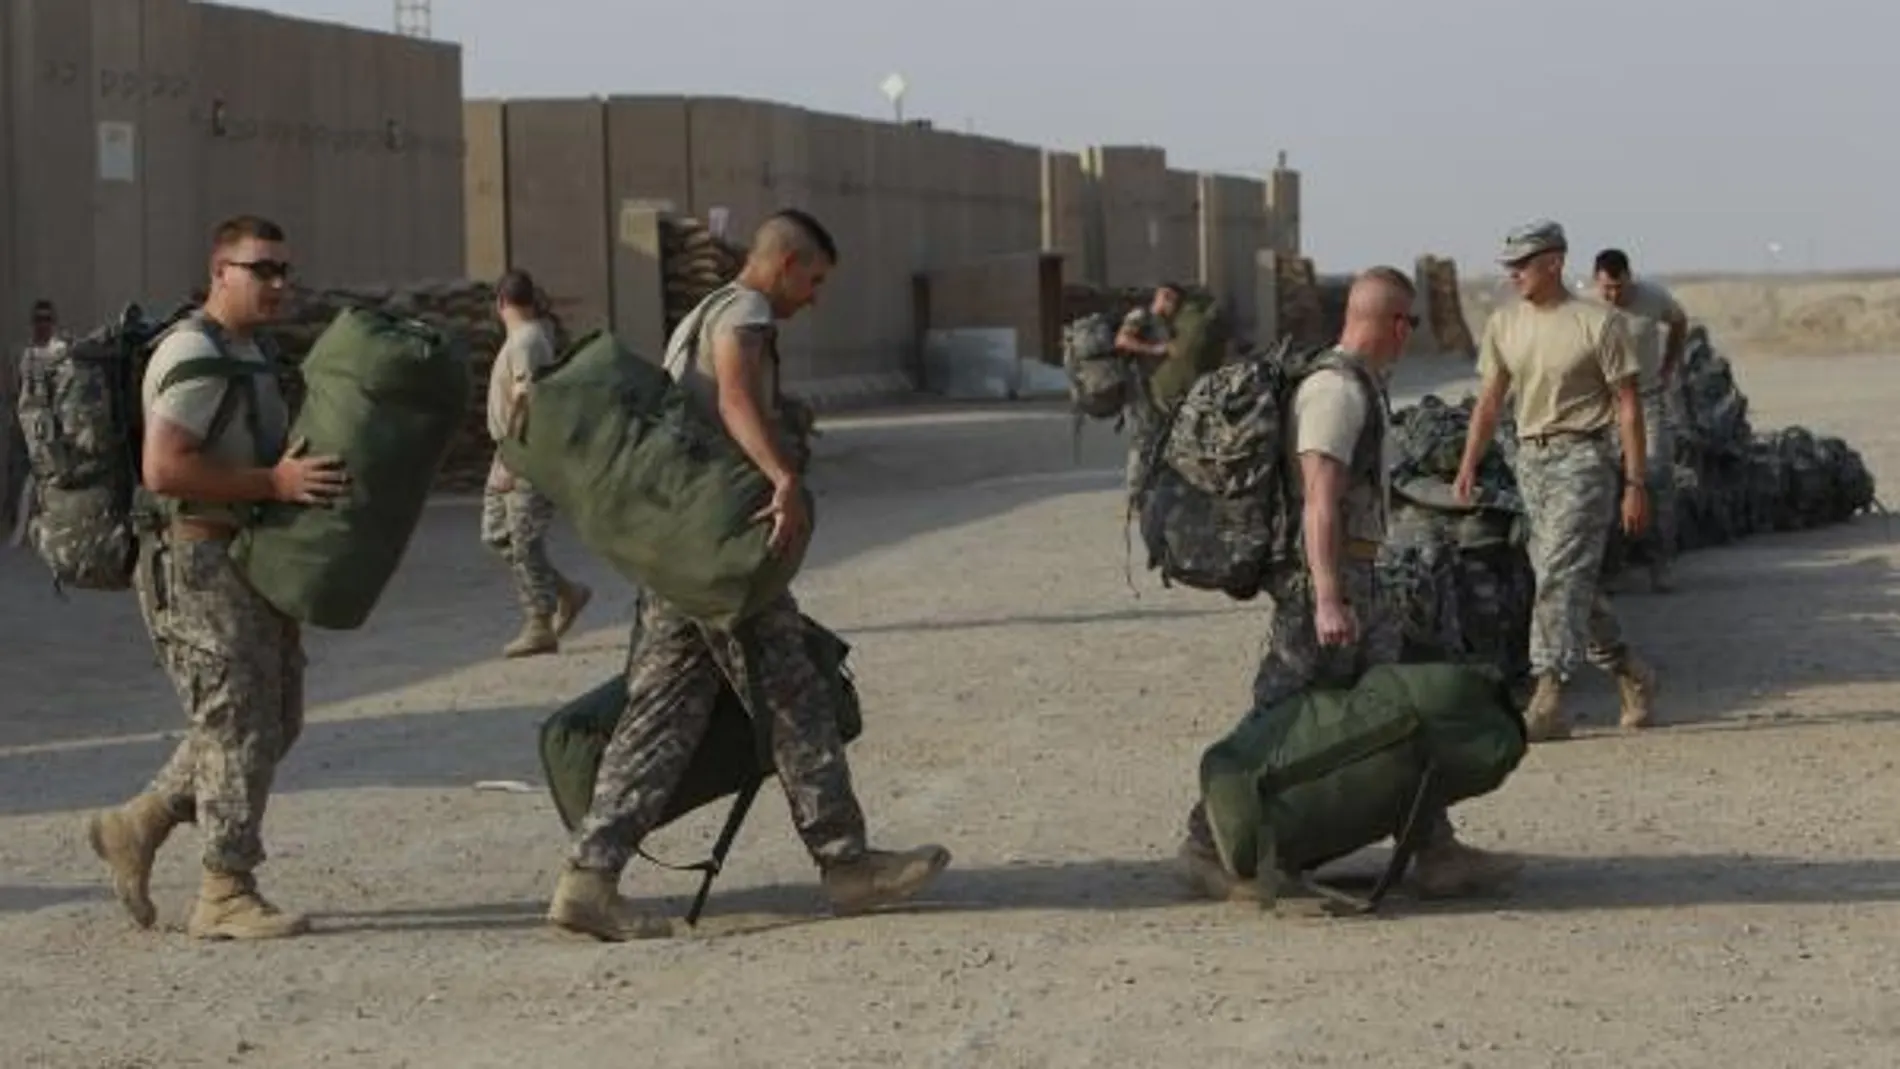 El presidente norteamericano explicó que Washington mantendrá tropas en Irak para asesorar y ayudar al Ejército iraquí. IMAGEN DE ARCHIVO